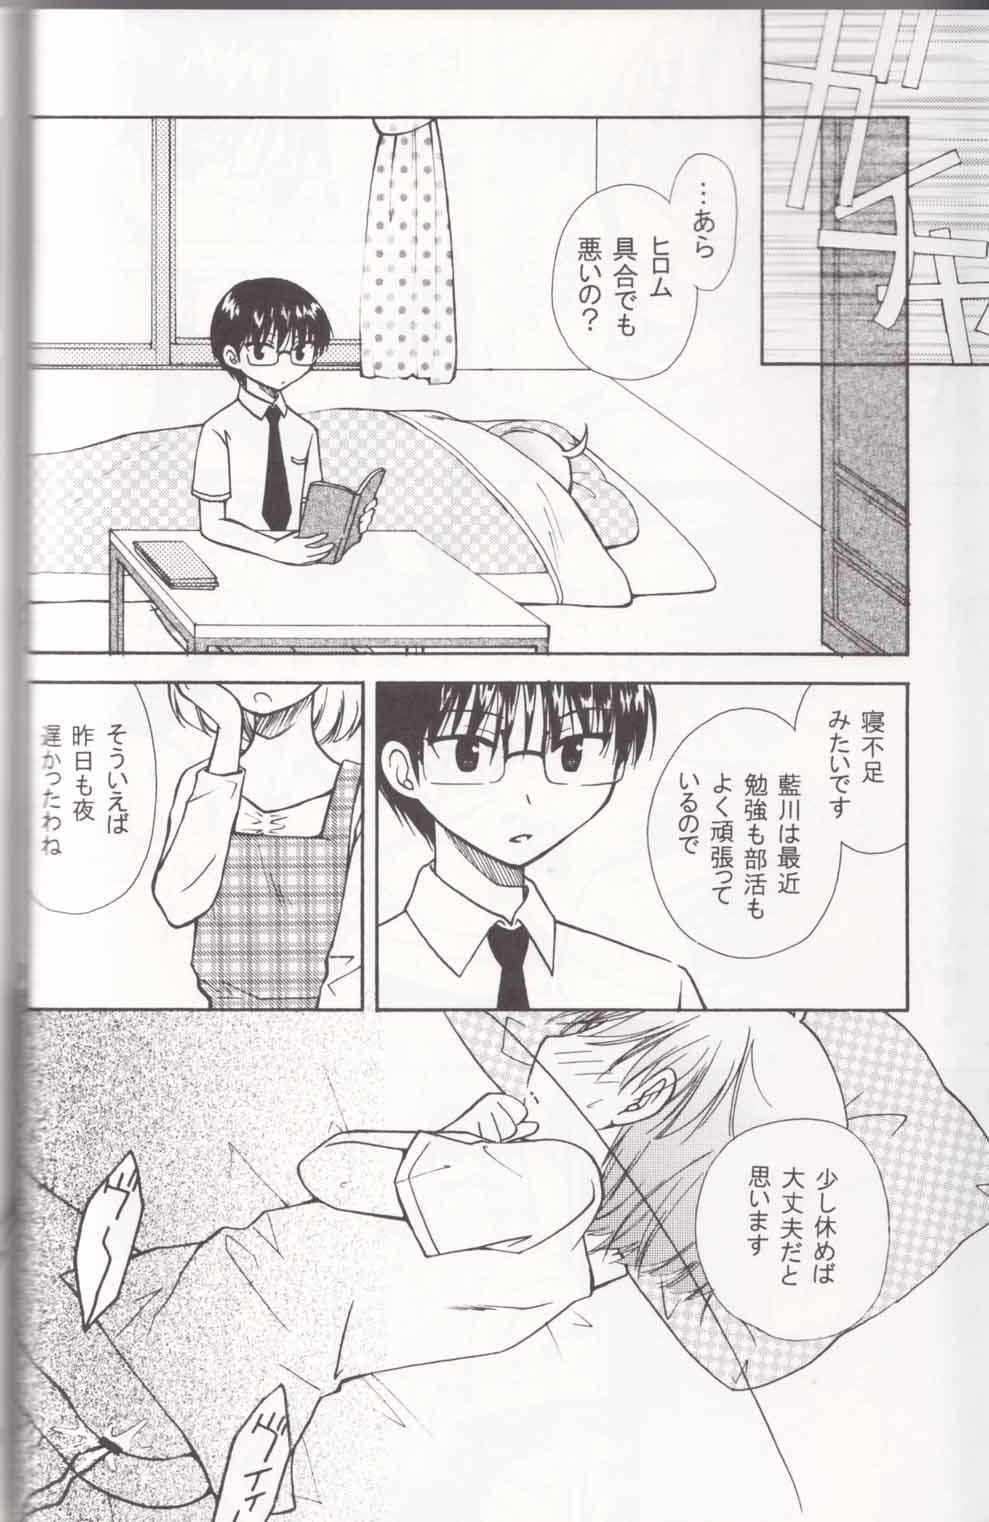 Stud Boku no Sensei. - P2 lets play pingpong Safadinha - Page 10